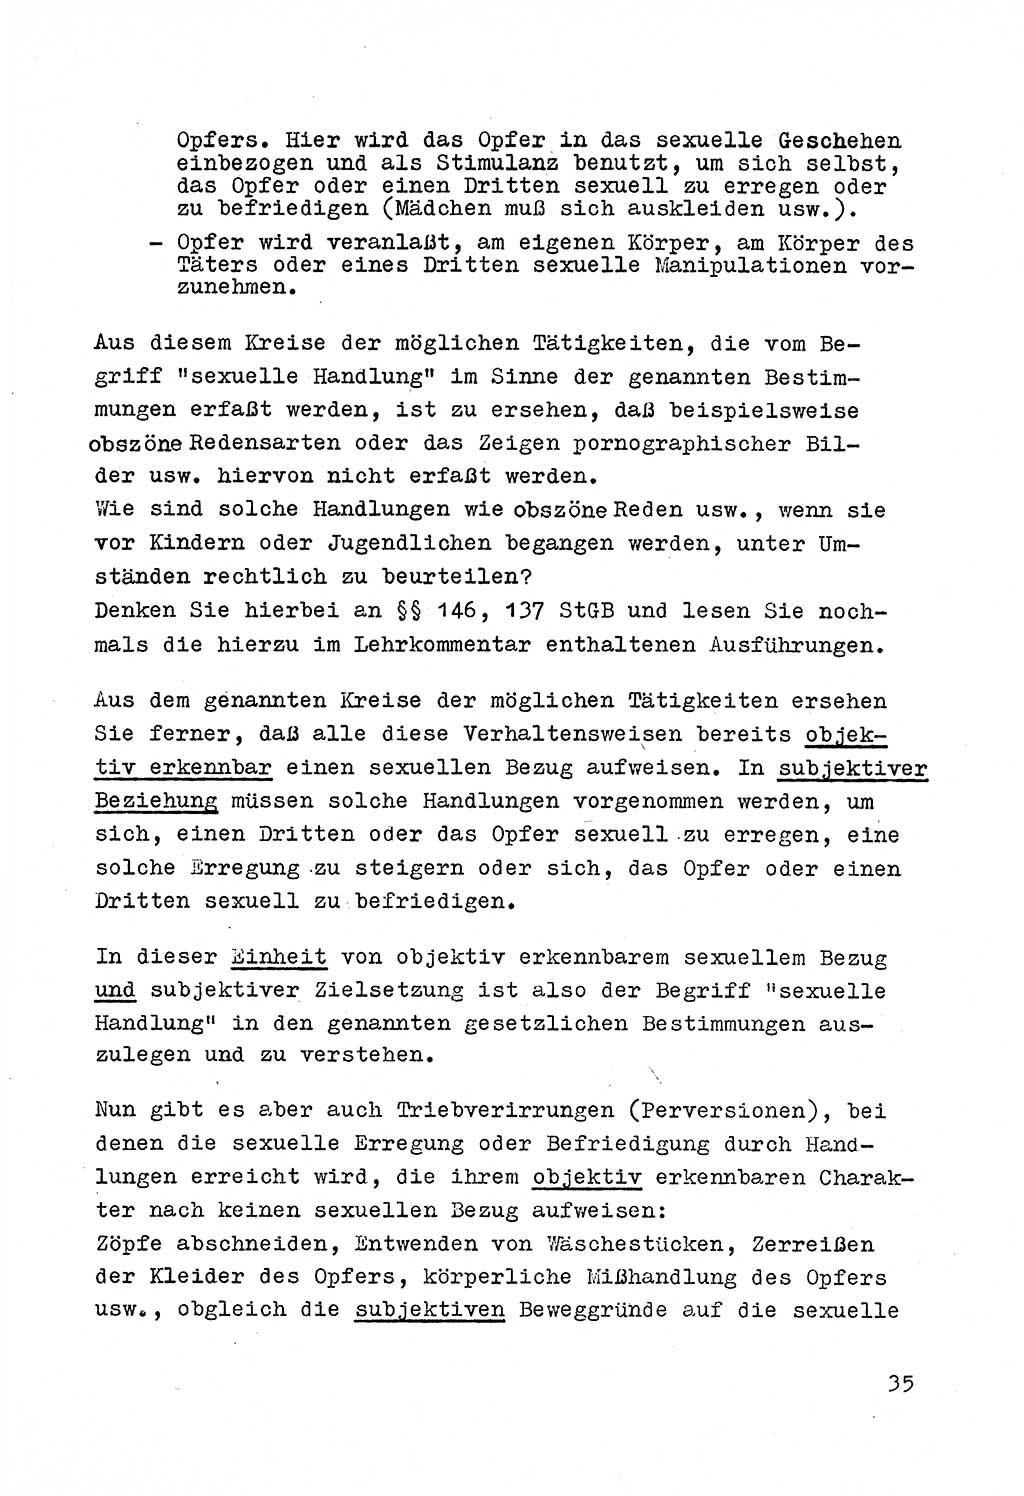 Strafrecht der DDR (Deutsche Demokratische Republik), Besonderer Teil, Lehrmaterial, Heft 4 1969, Seite 35 (Strafr. DDR BT Lehrmat. H. 4 1969, S. 35)